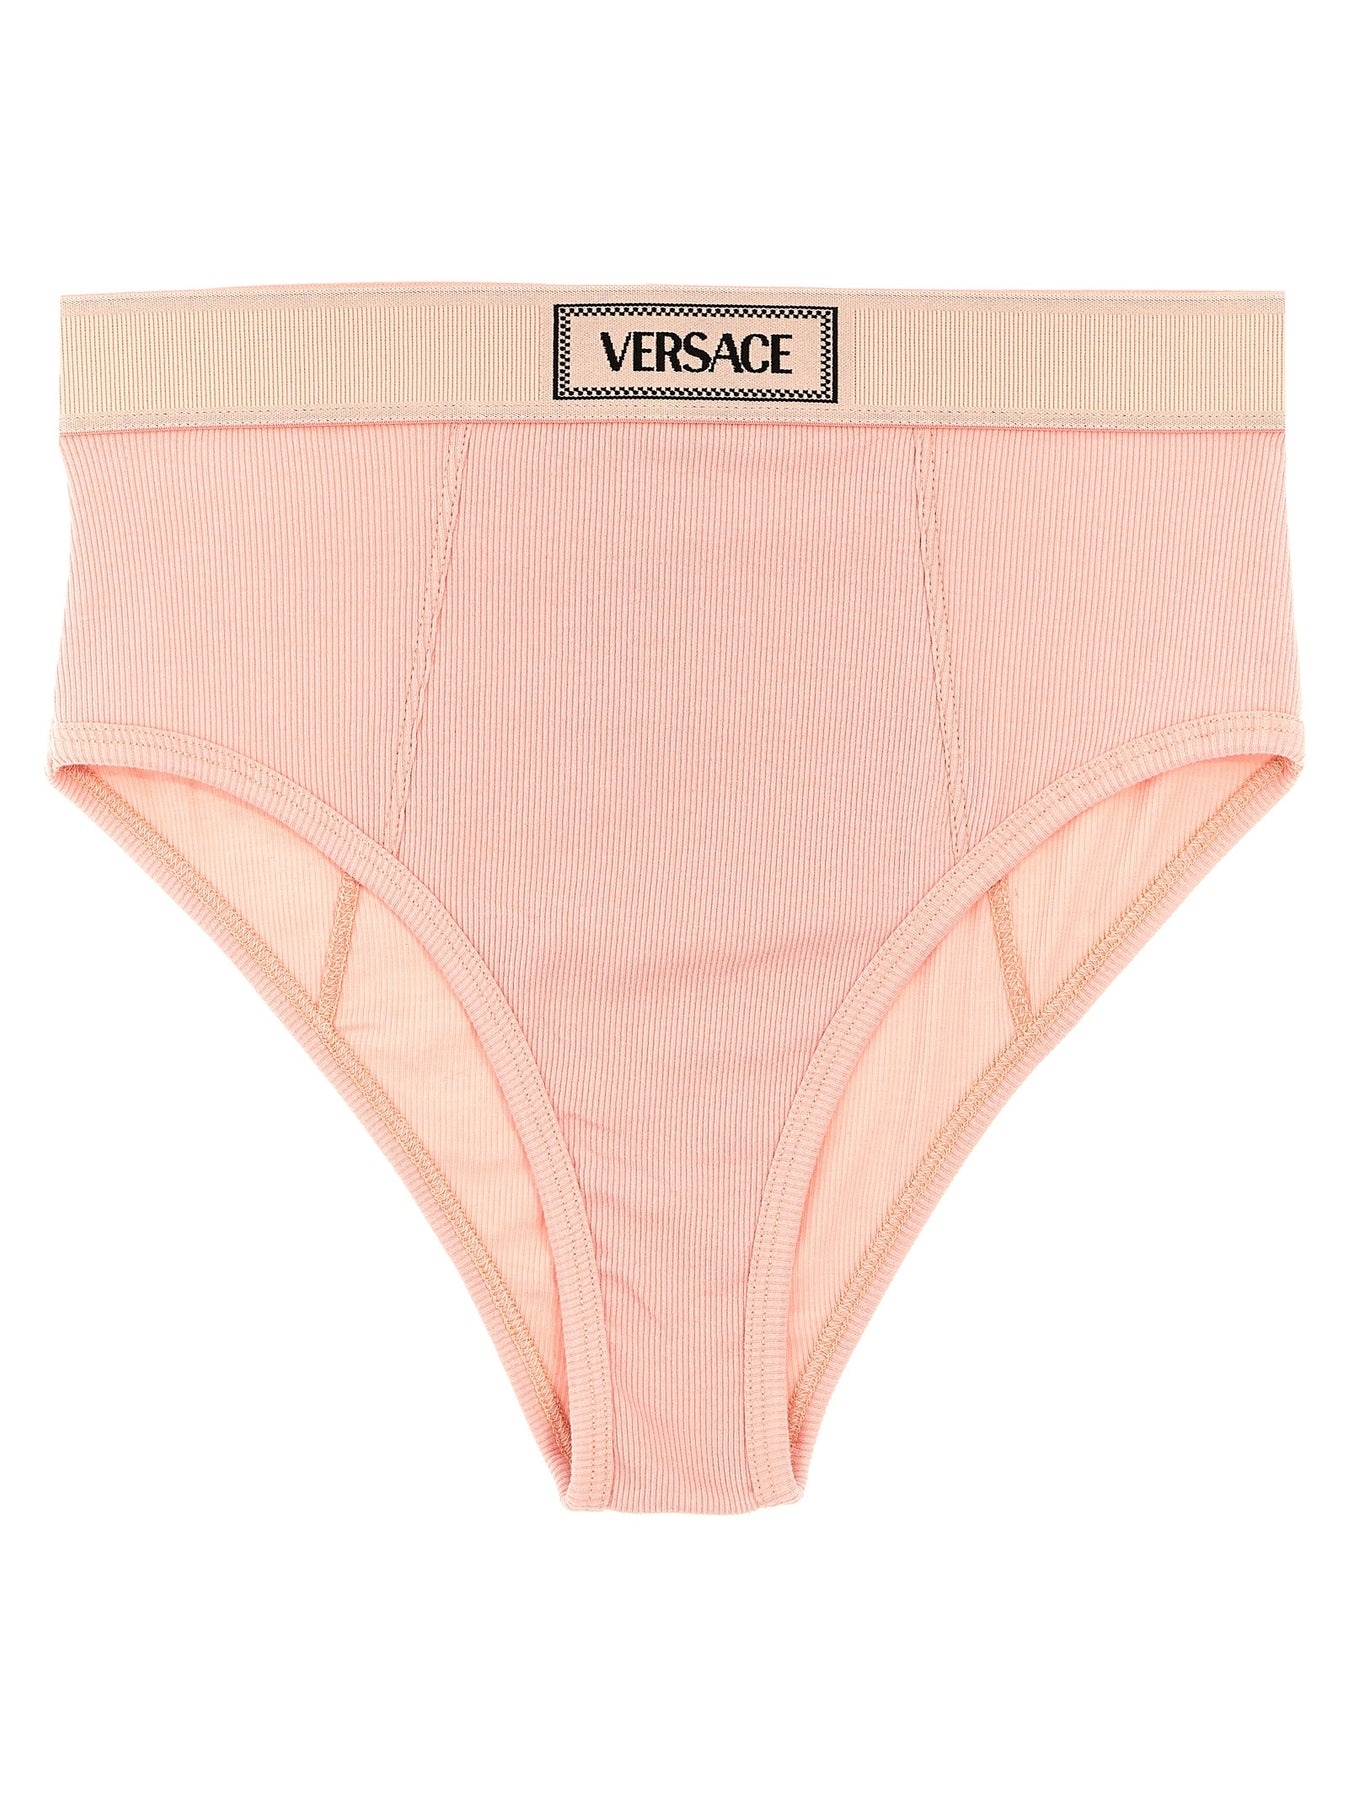 90s Vintage Underwear, Body Pink - 1